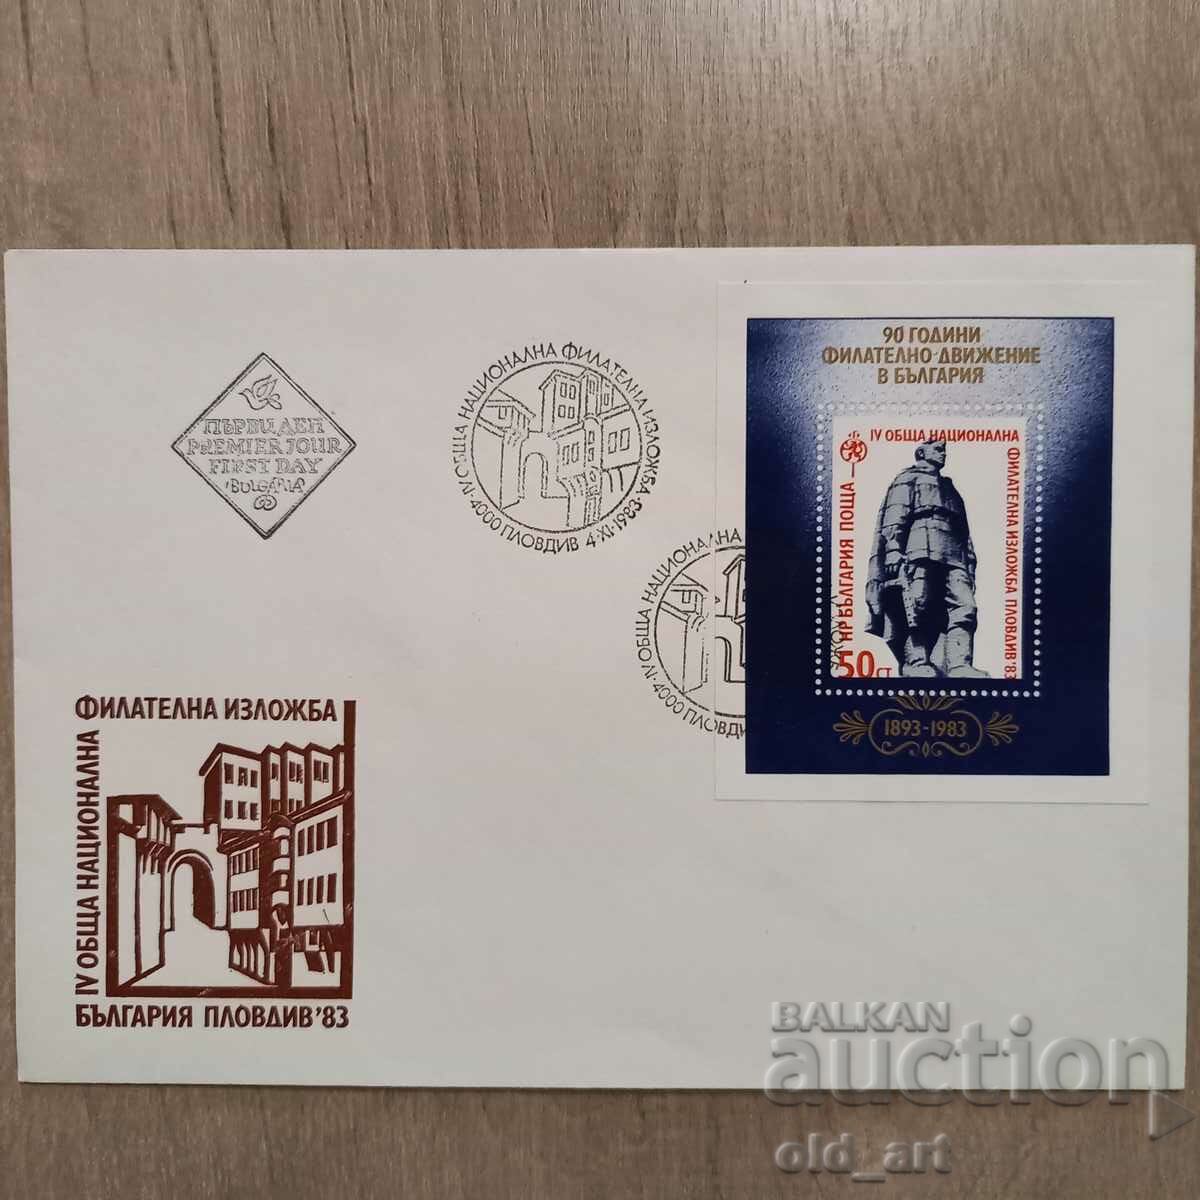 Пощенски плик - IV Обща нац. филателна изложба Пловдив 83